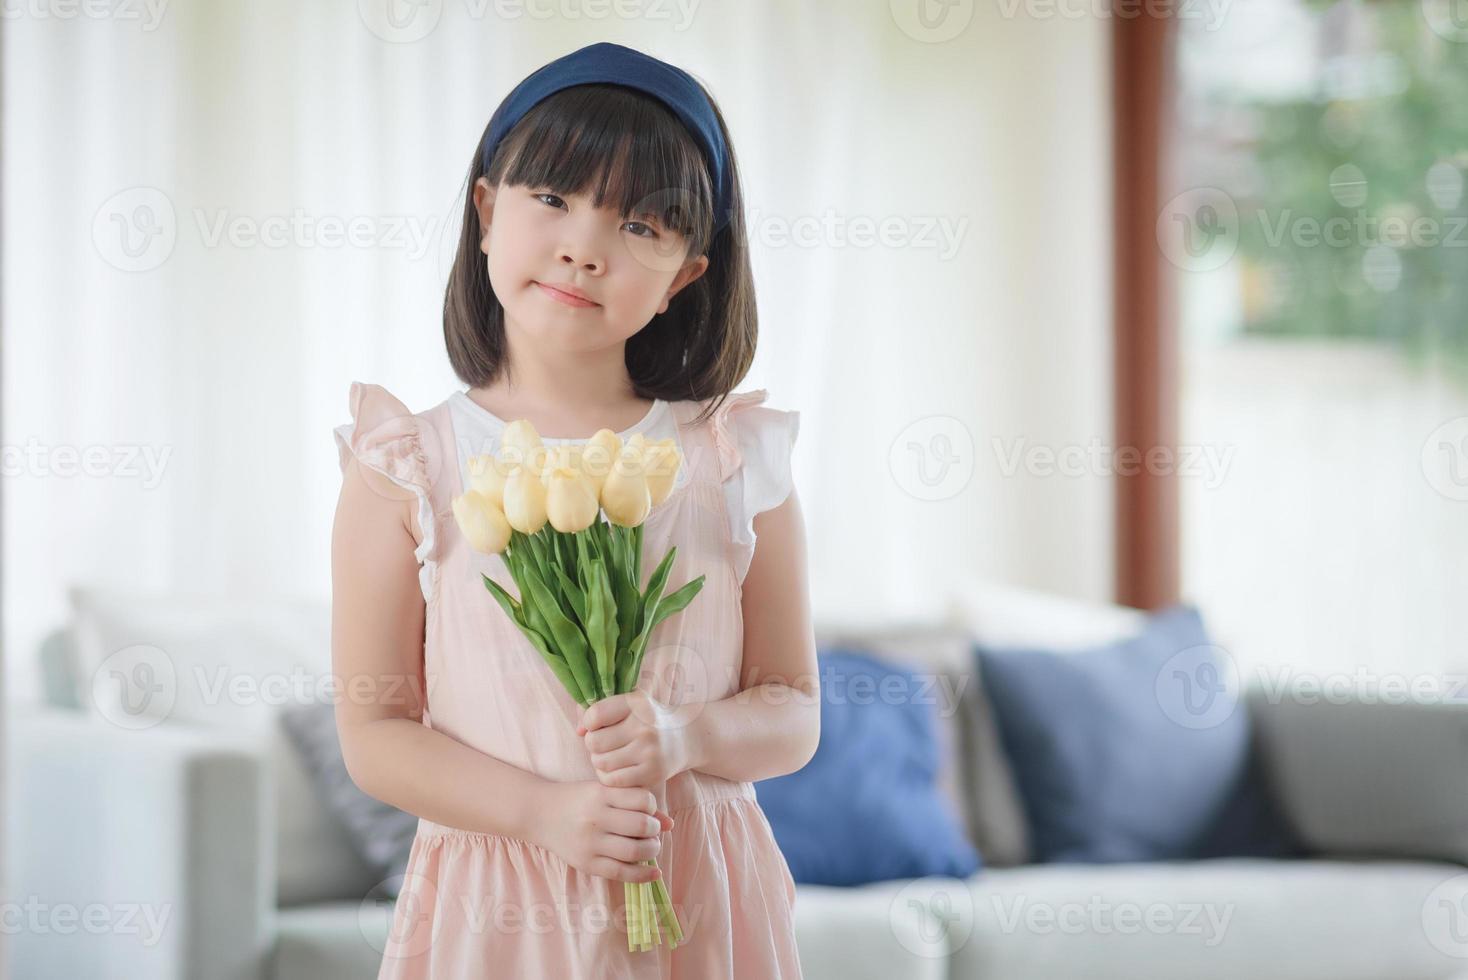 ritratto di una bambina asiatica carina che tiene un fiore con un sorriso affascinante e felice nel soggiorno di casa. foto